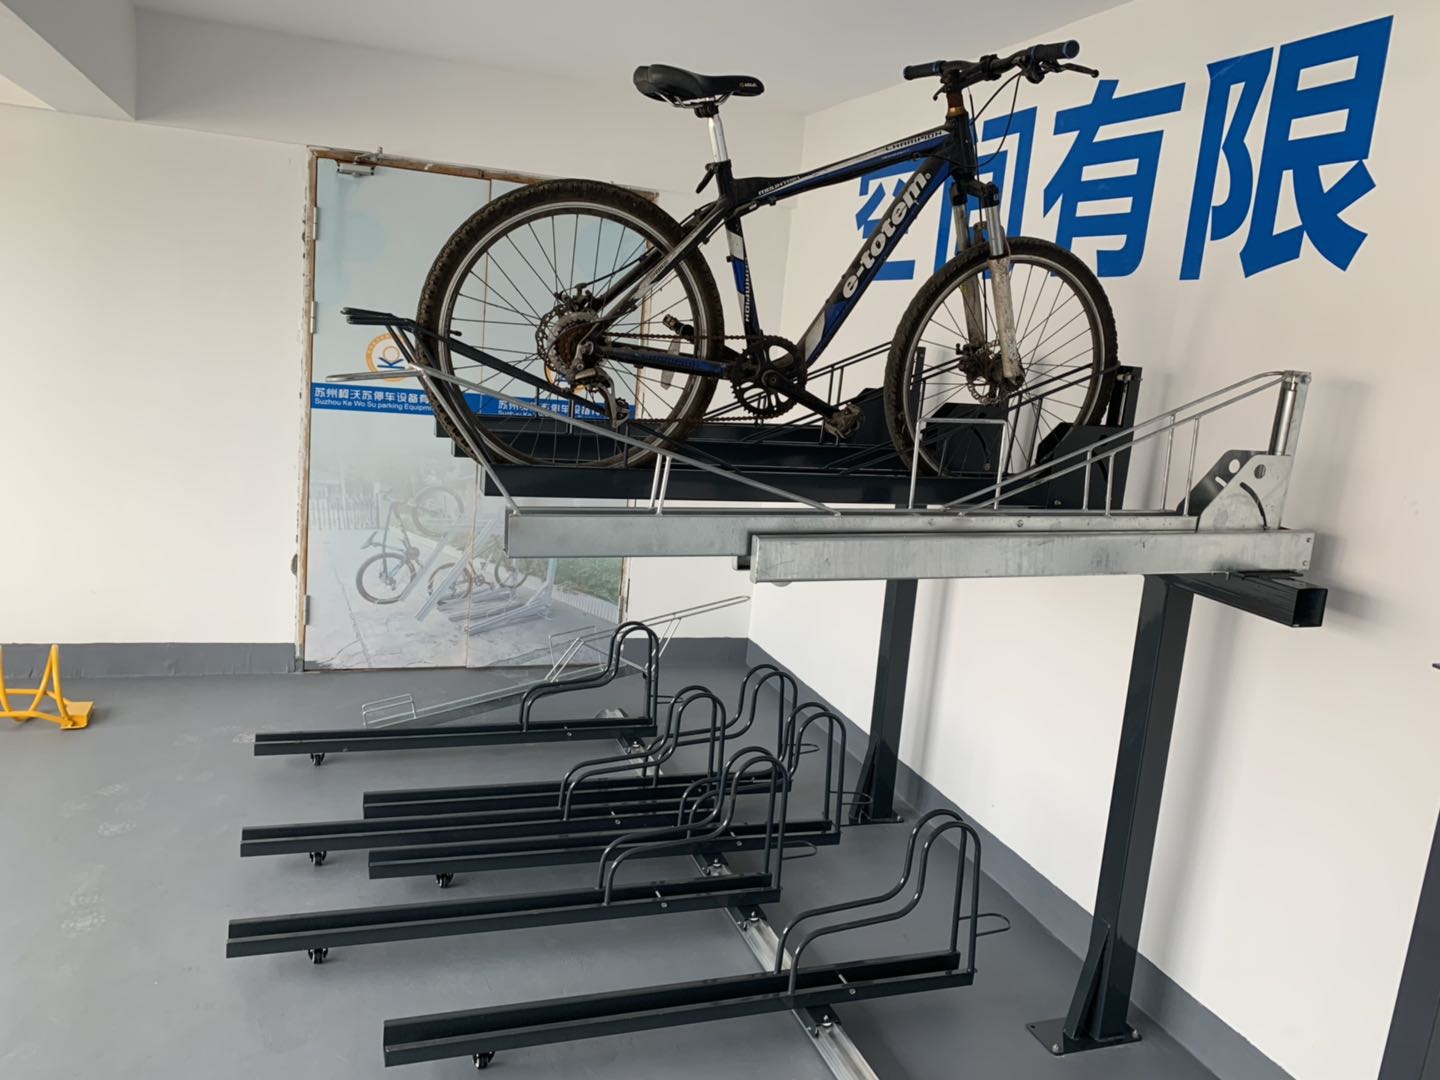 自行车停车棚设计_自行车停车棚设计分享展示